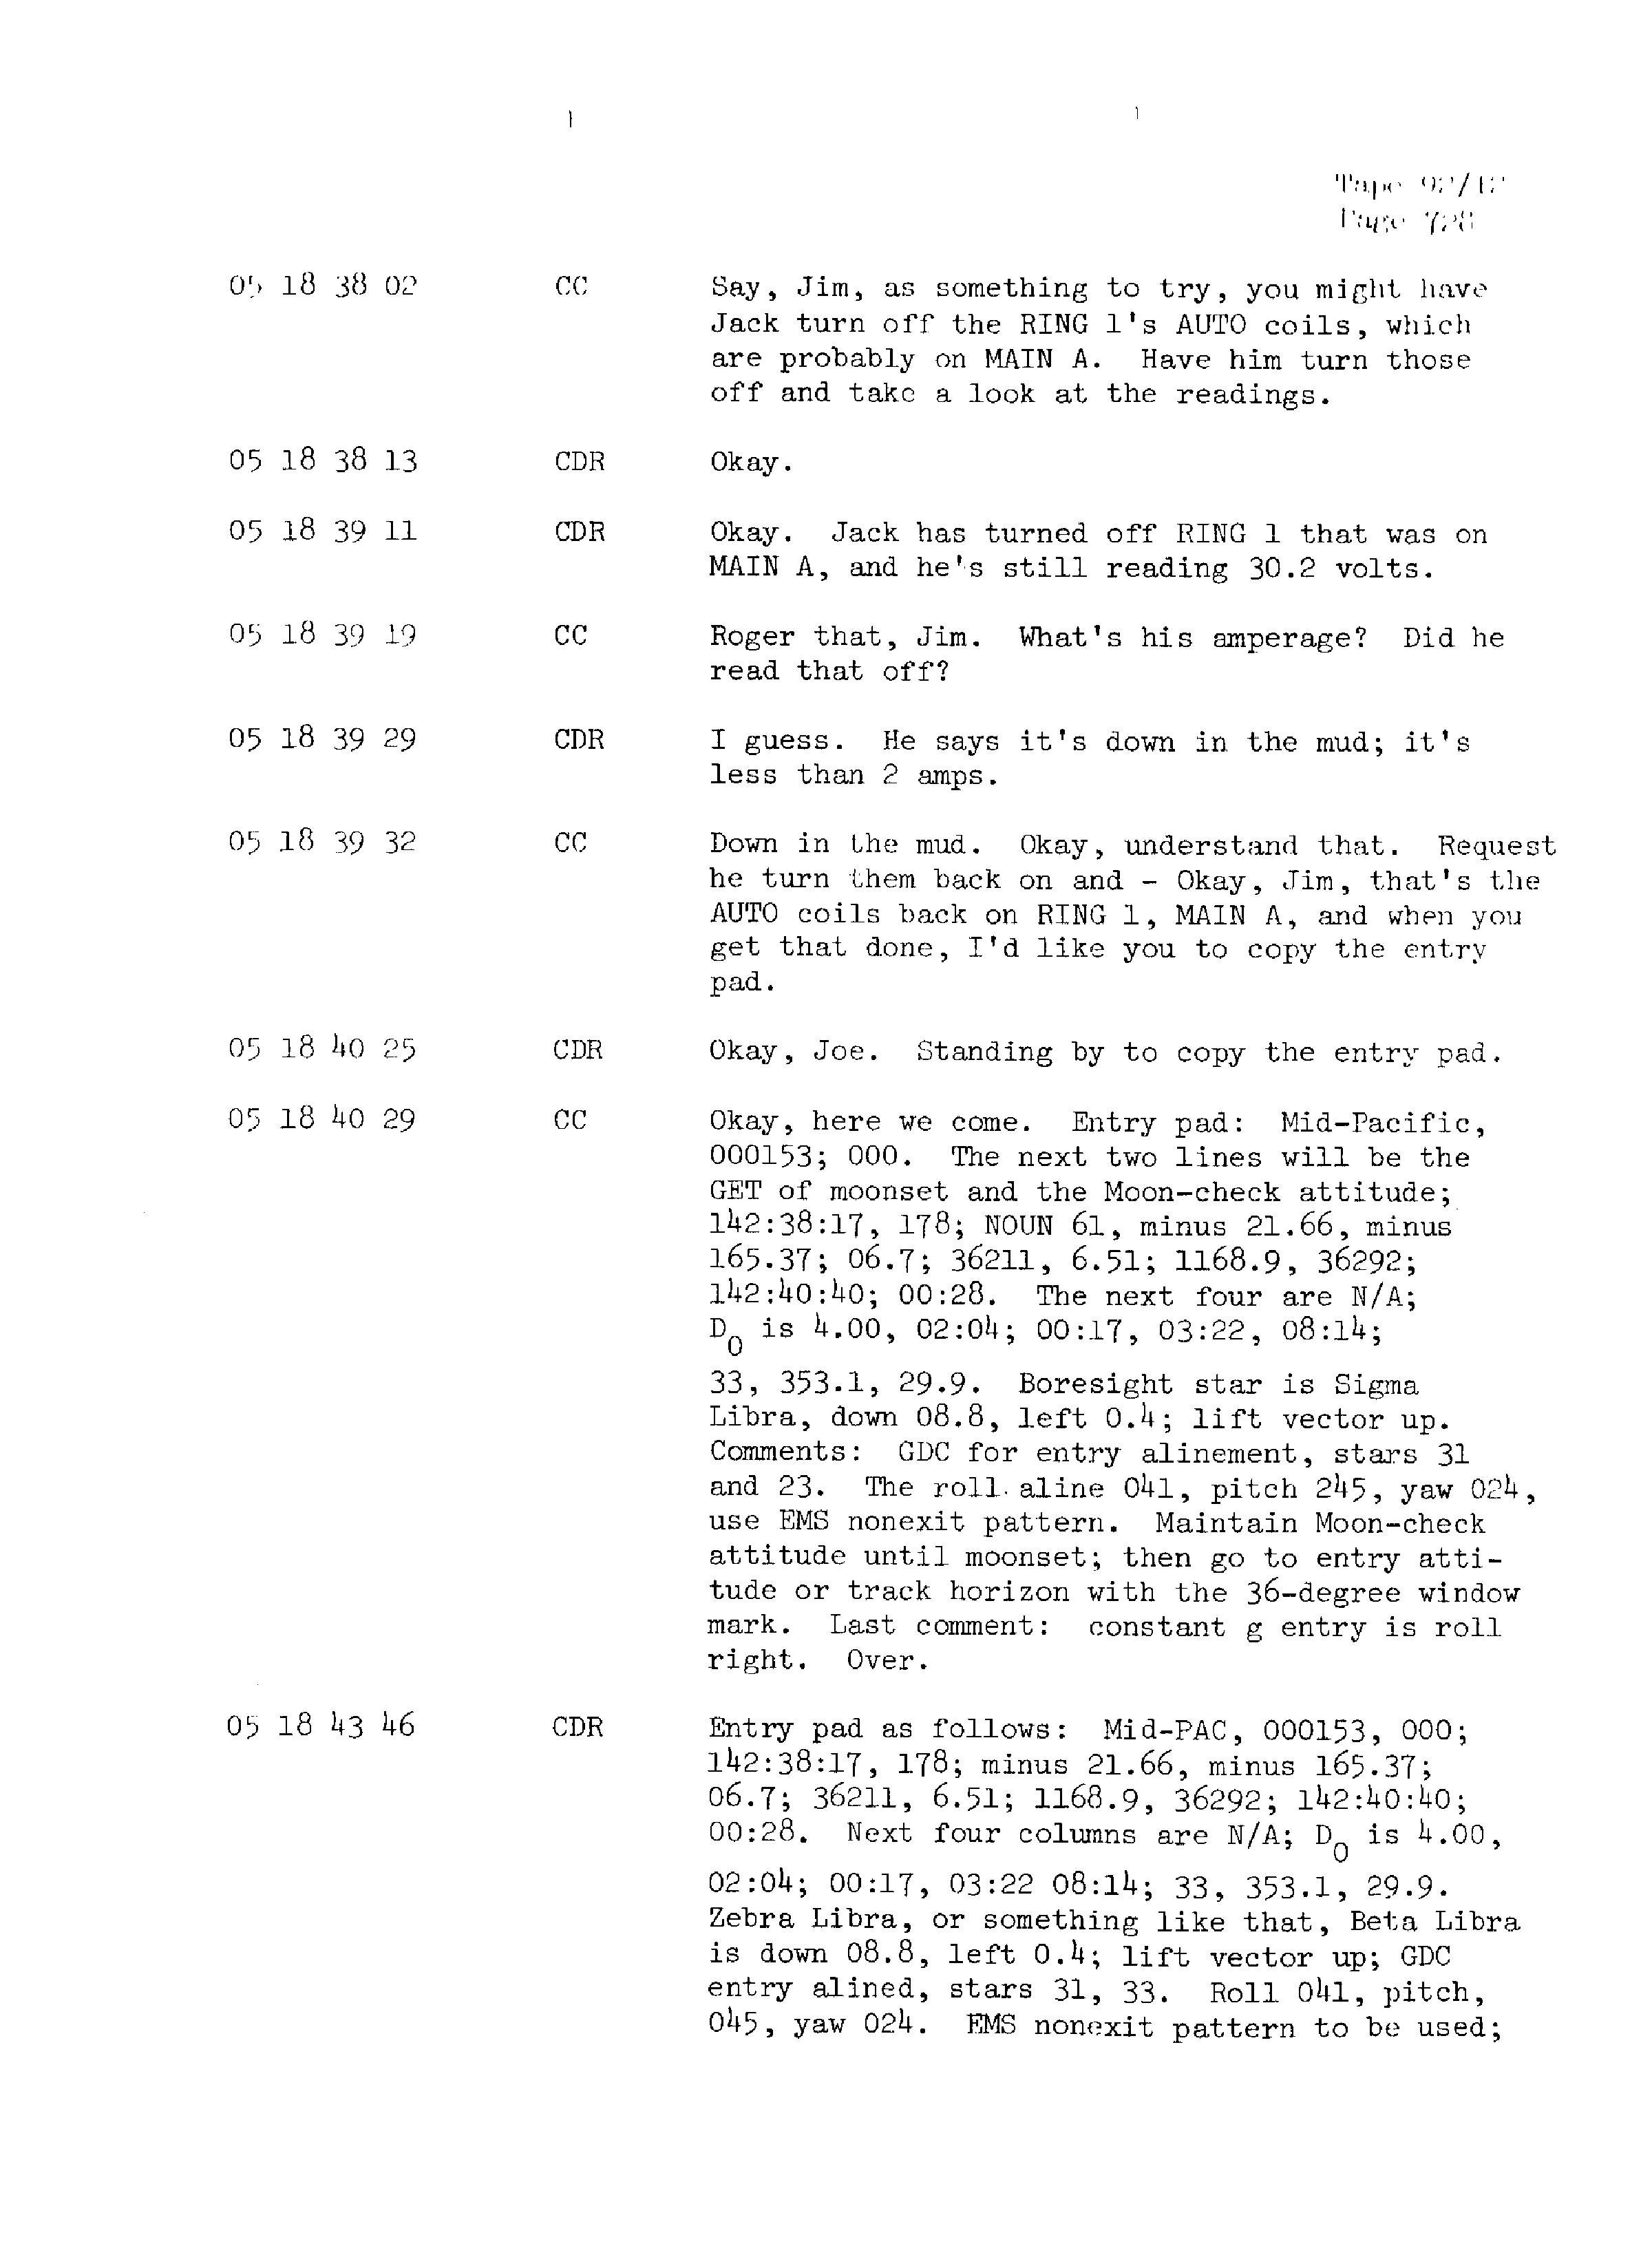 Page 735 of Apollo 13’s original transcript